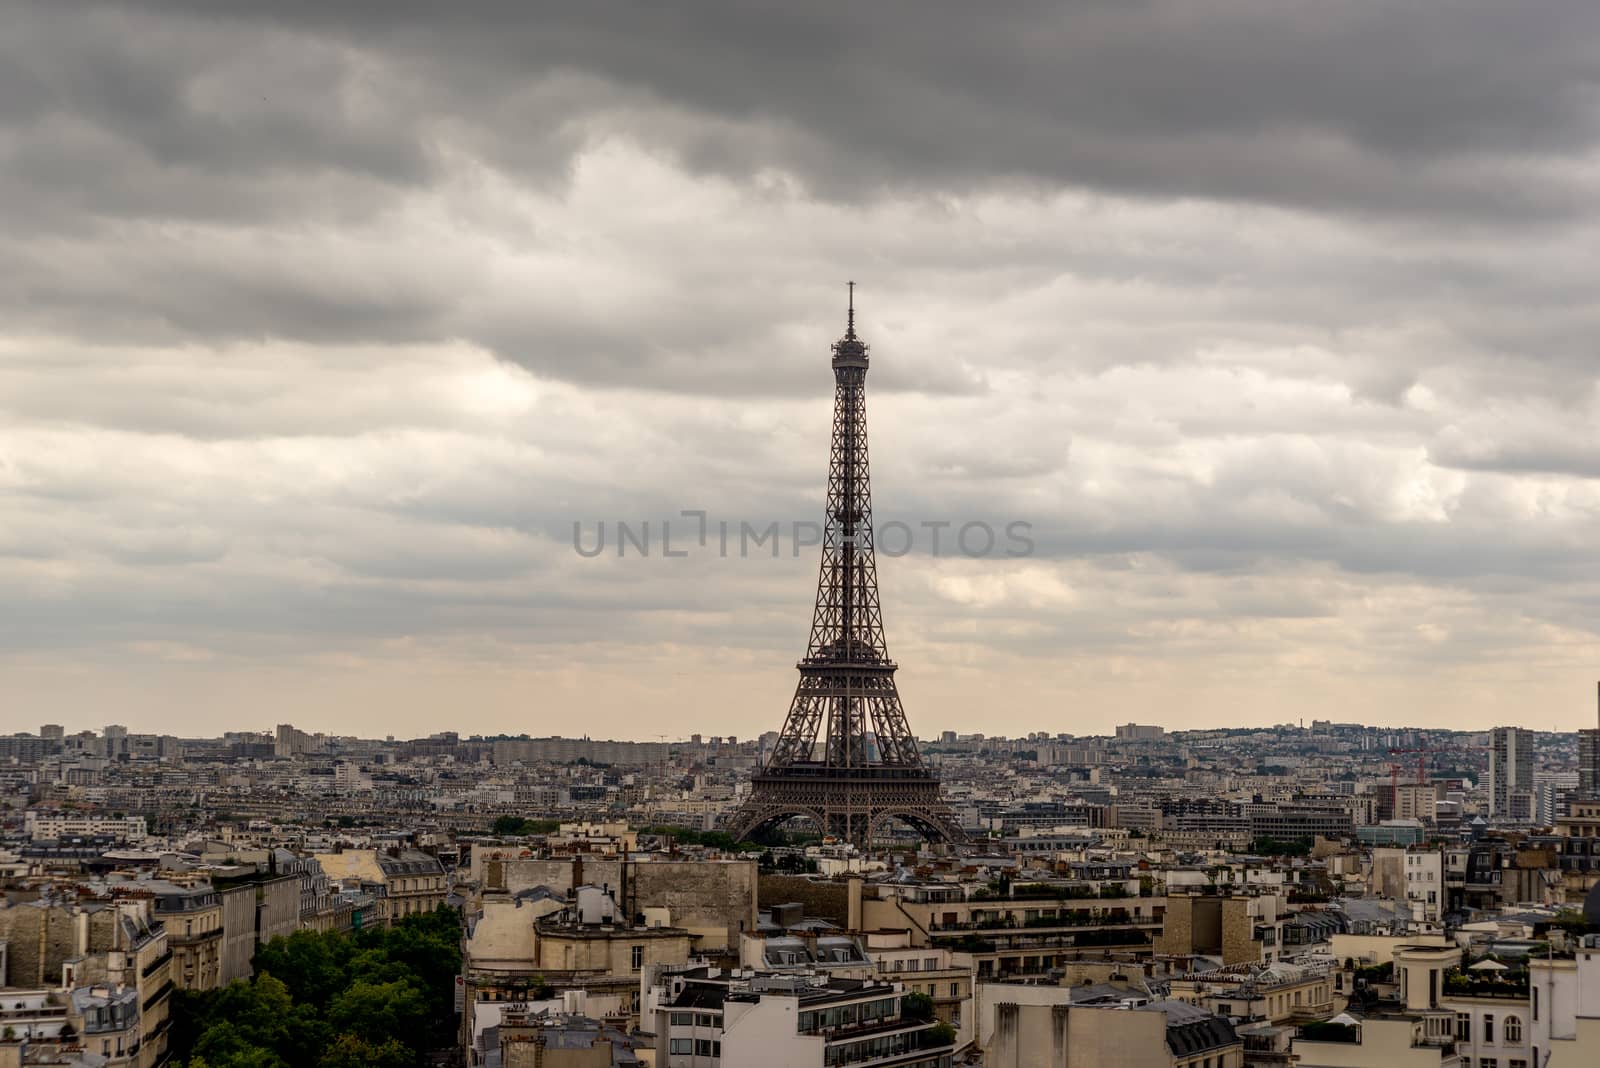 Eiffel tower in Paris by pomemick